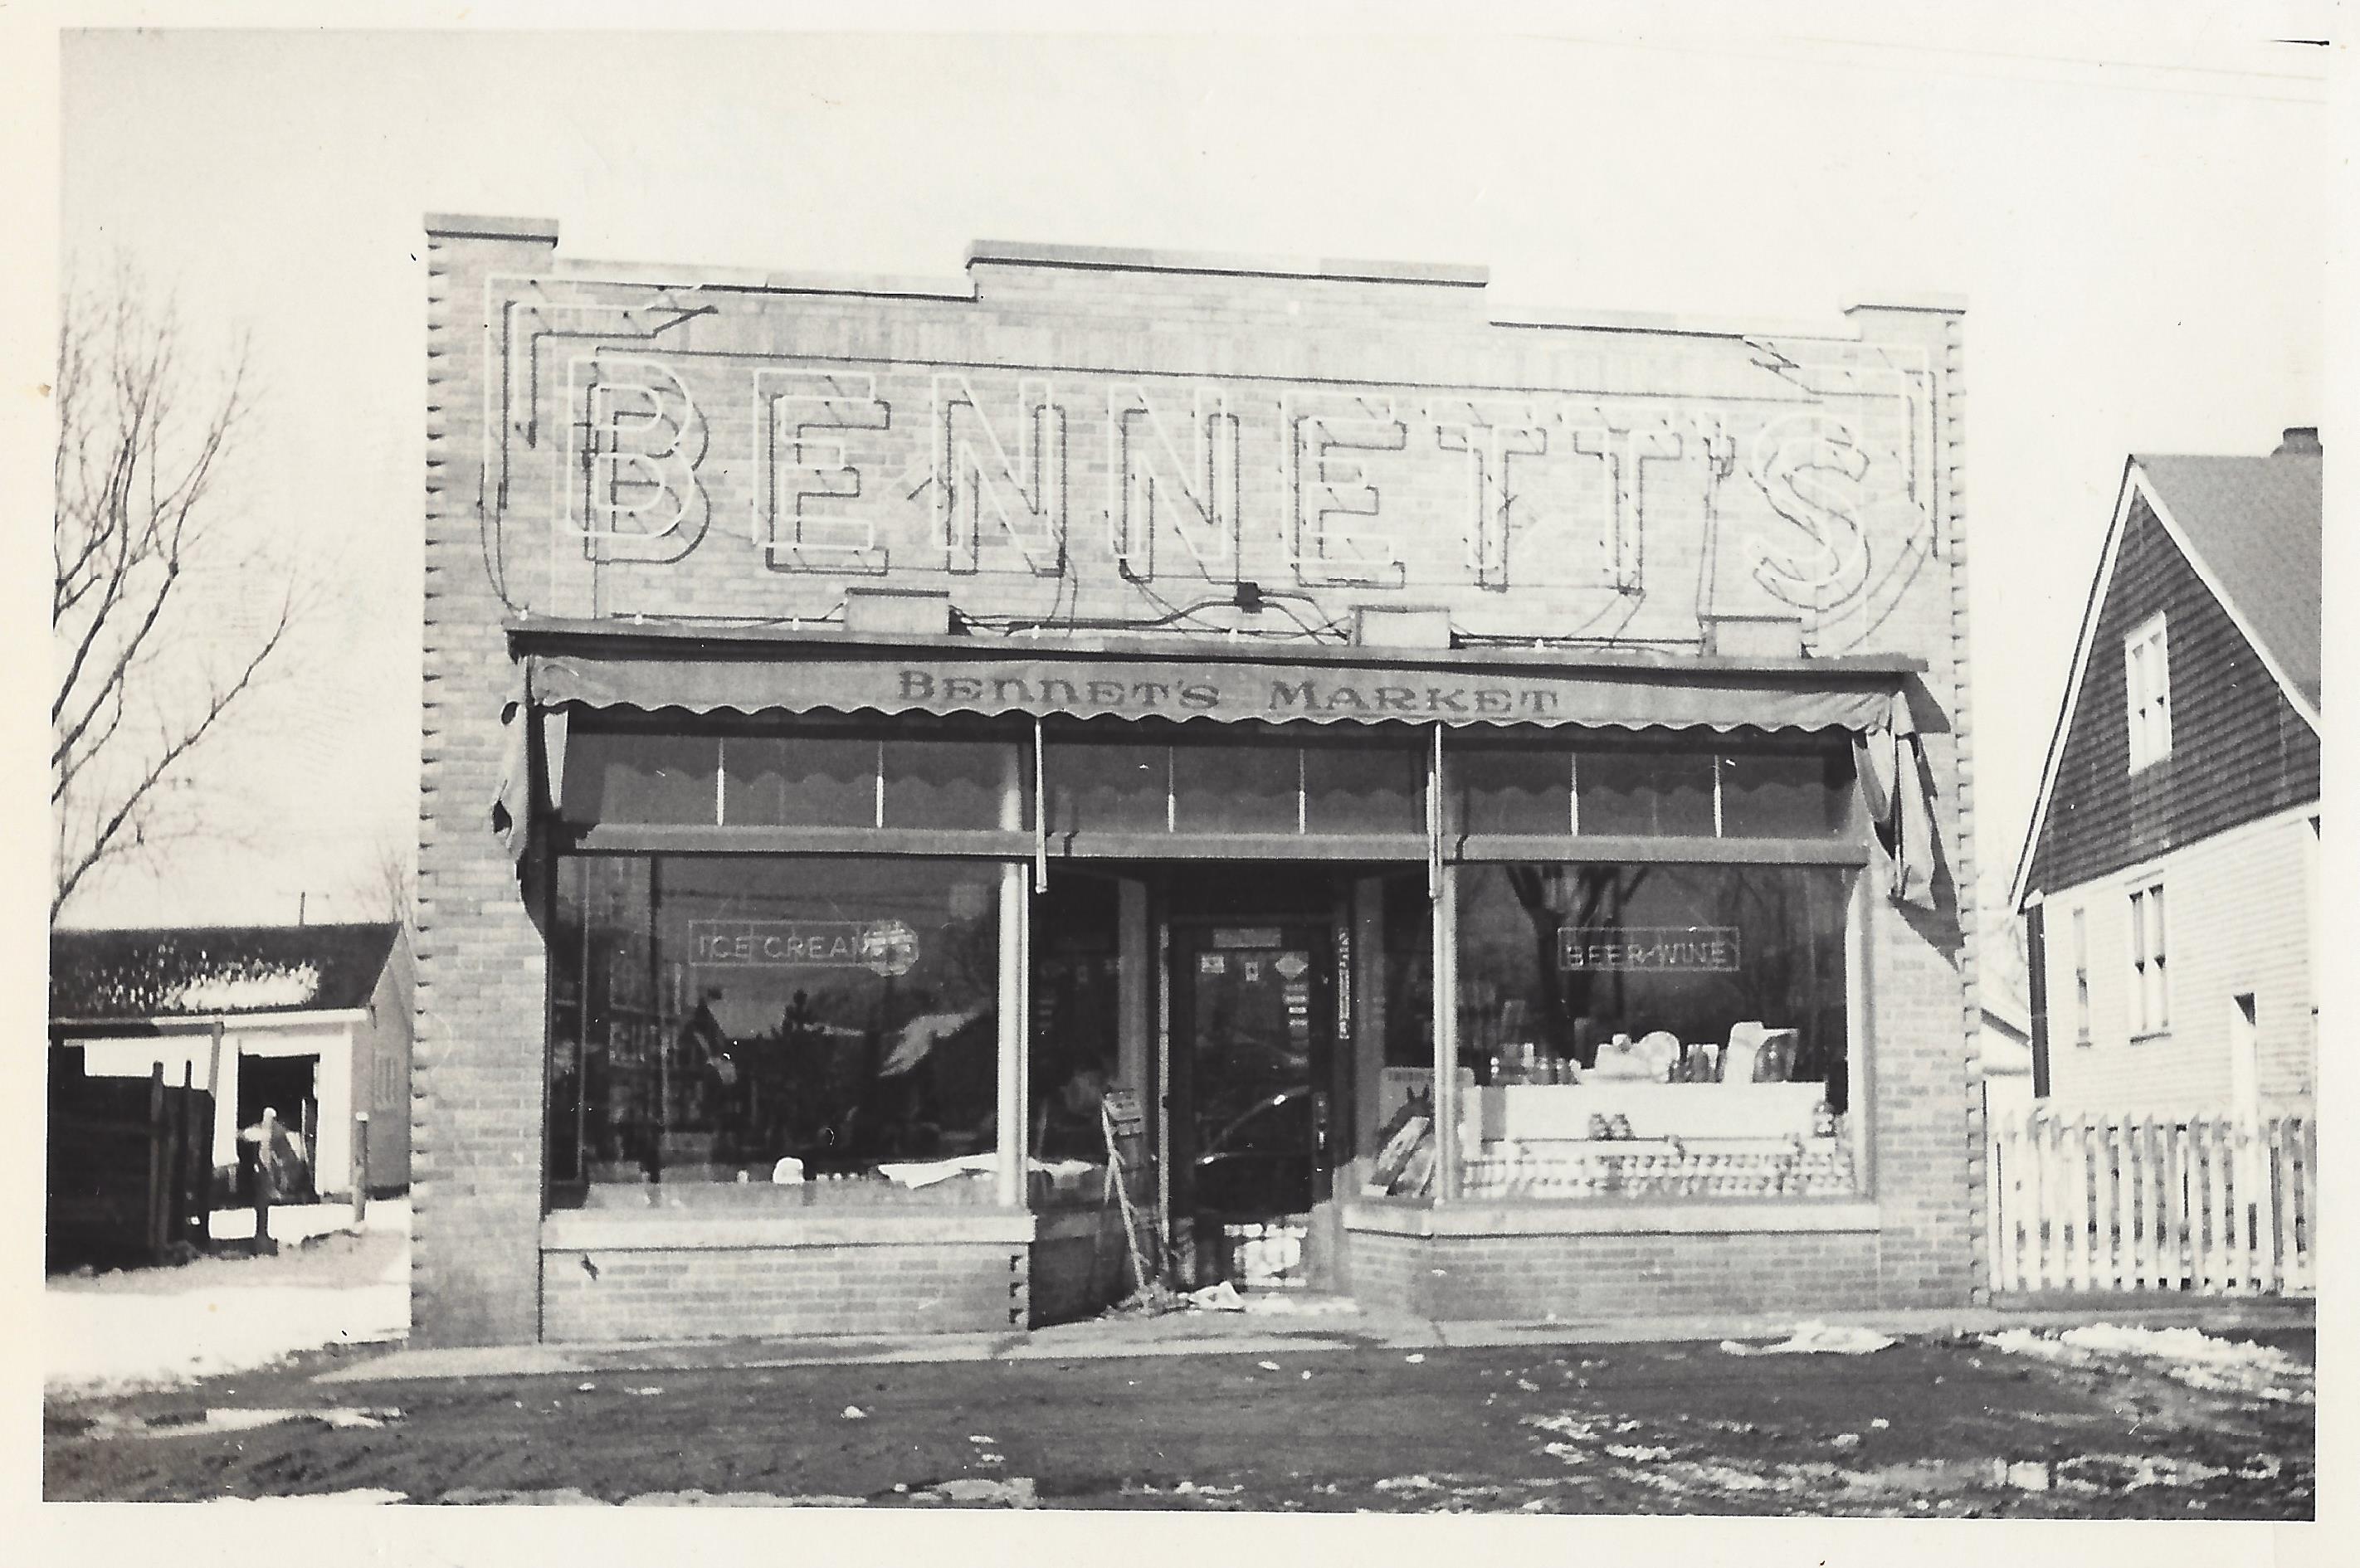 Bennett's Market